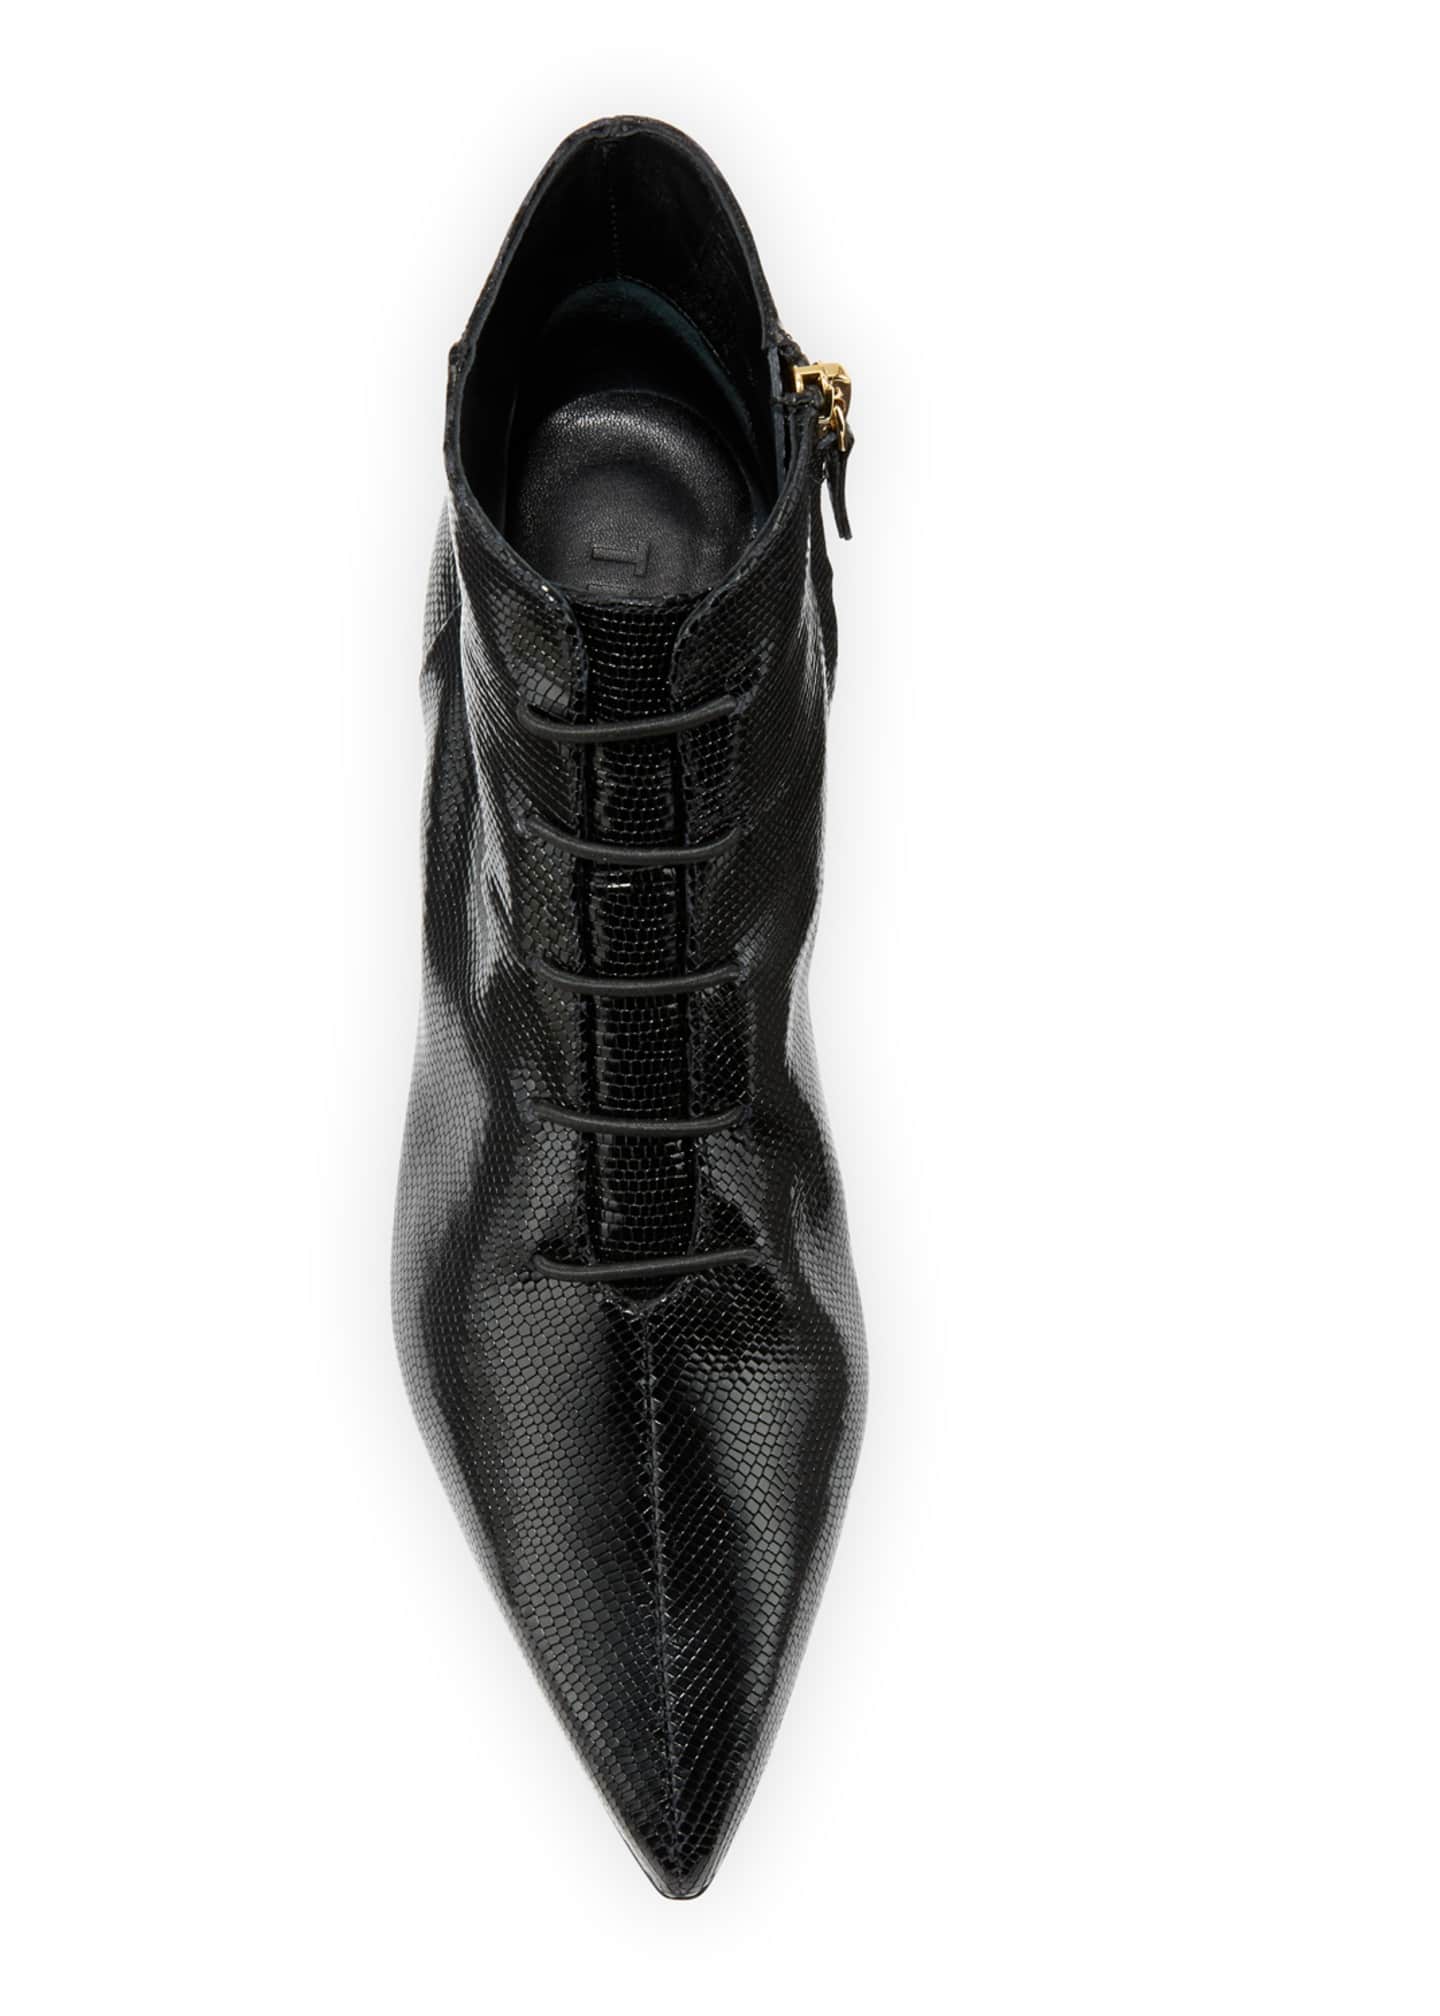 Tibi Joe Snake-Embossed Ankle Booties, Black - Bergdorf Goodman